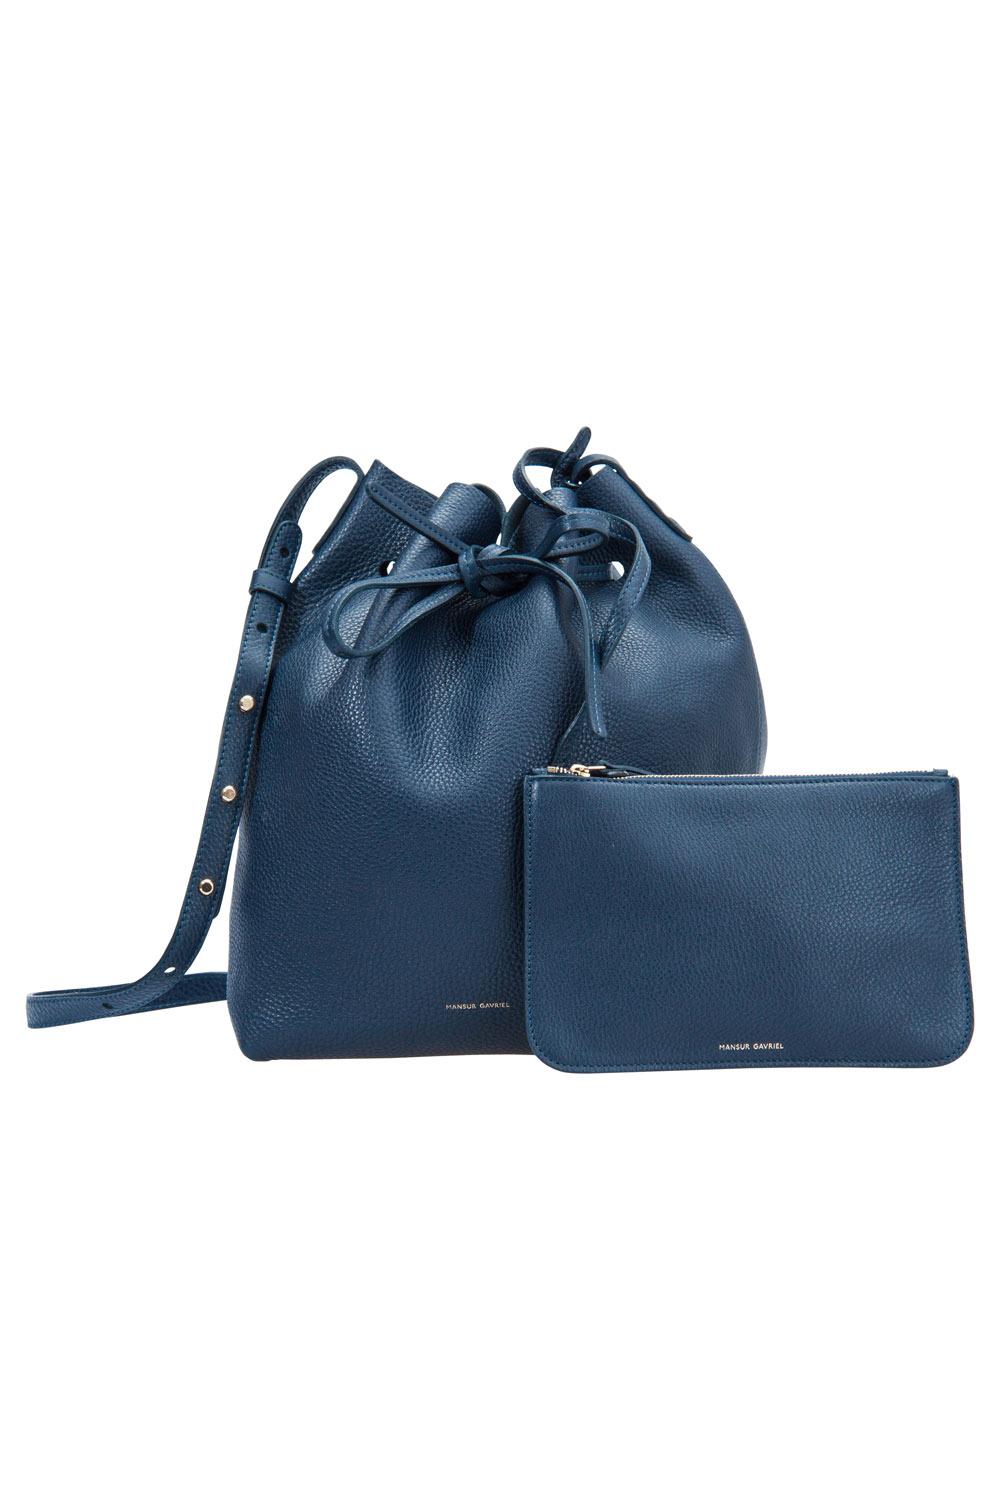 Women's Mansur Gavriel Navy Blue Leather Bucket Bag